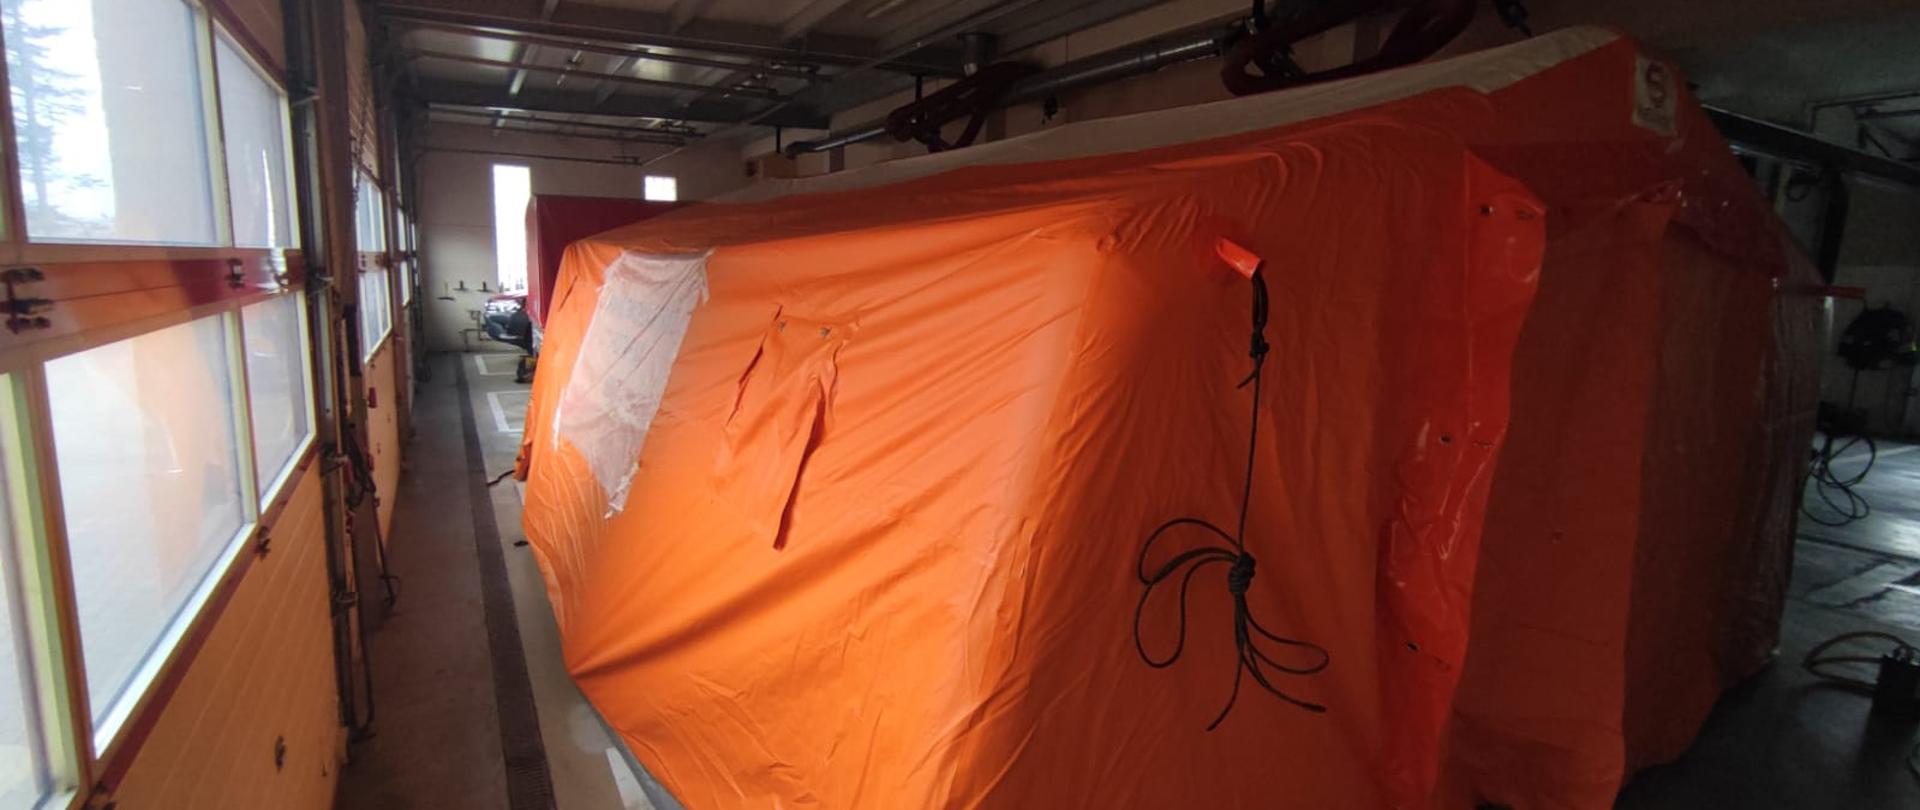 w pomieszczeniu garażowym stoi w pełni rozstawiony namiot pneumatyczny w kolorze pomarańczowym